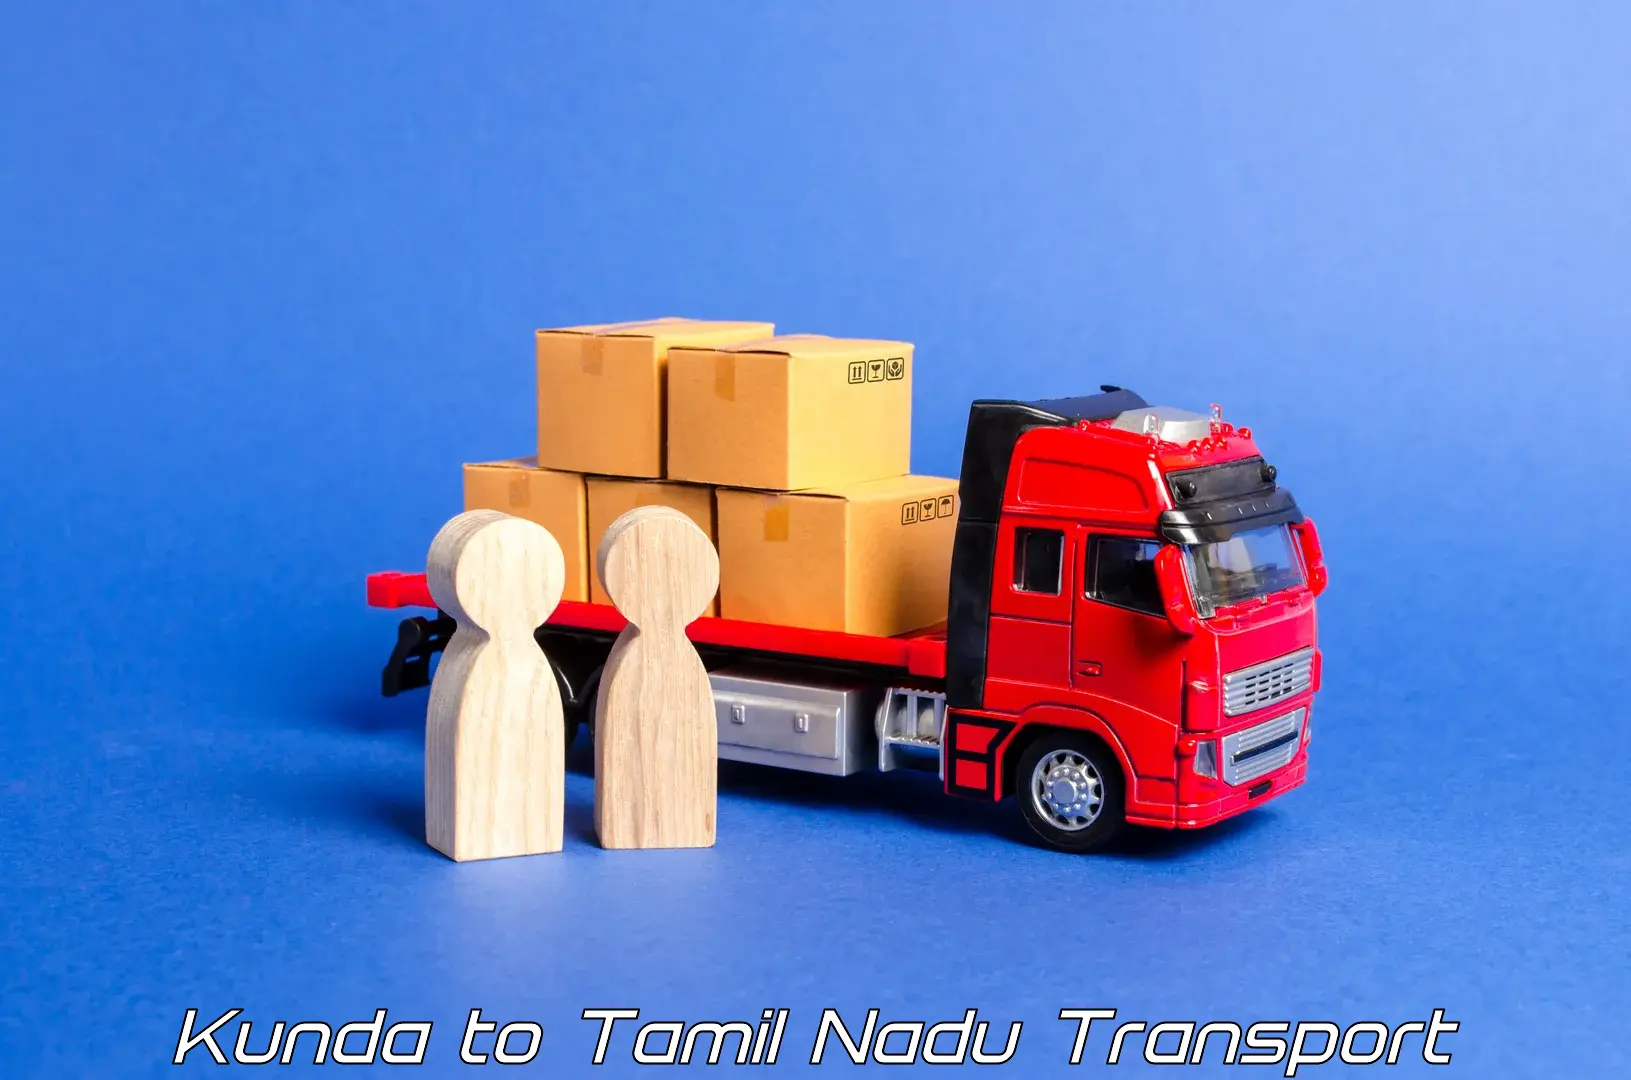 Transport in sharing Kunda to Sankarankoil